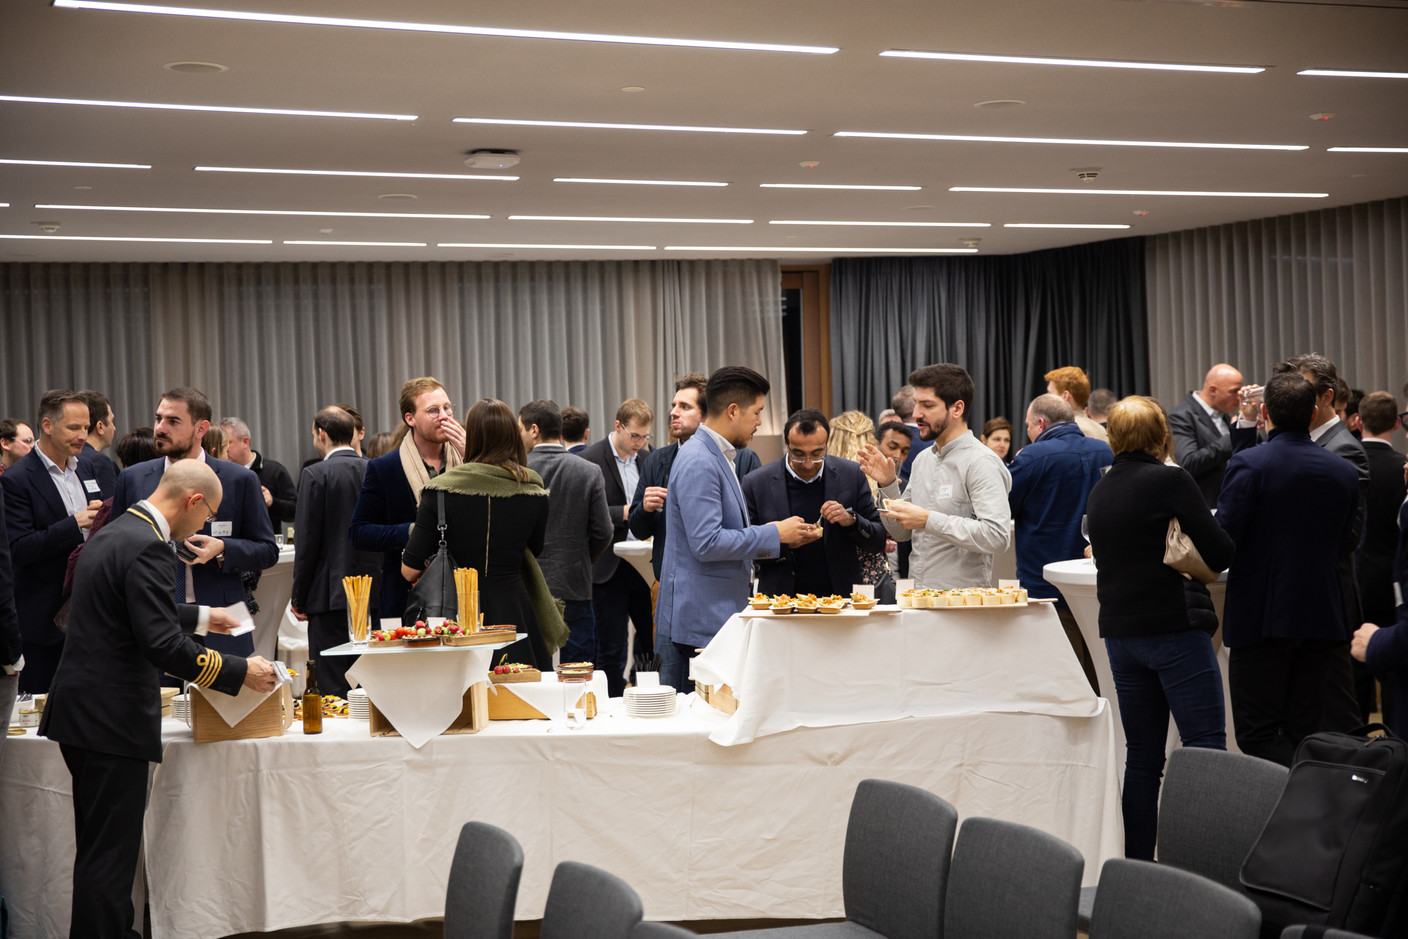 Après la remise des prix et la table ronde, les invités étaient invités à goûter certains des produits présentés par les start-up. (Photo: Romain Gamba / Maison Moderne)